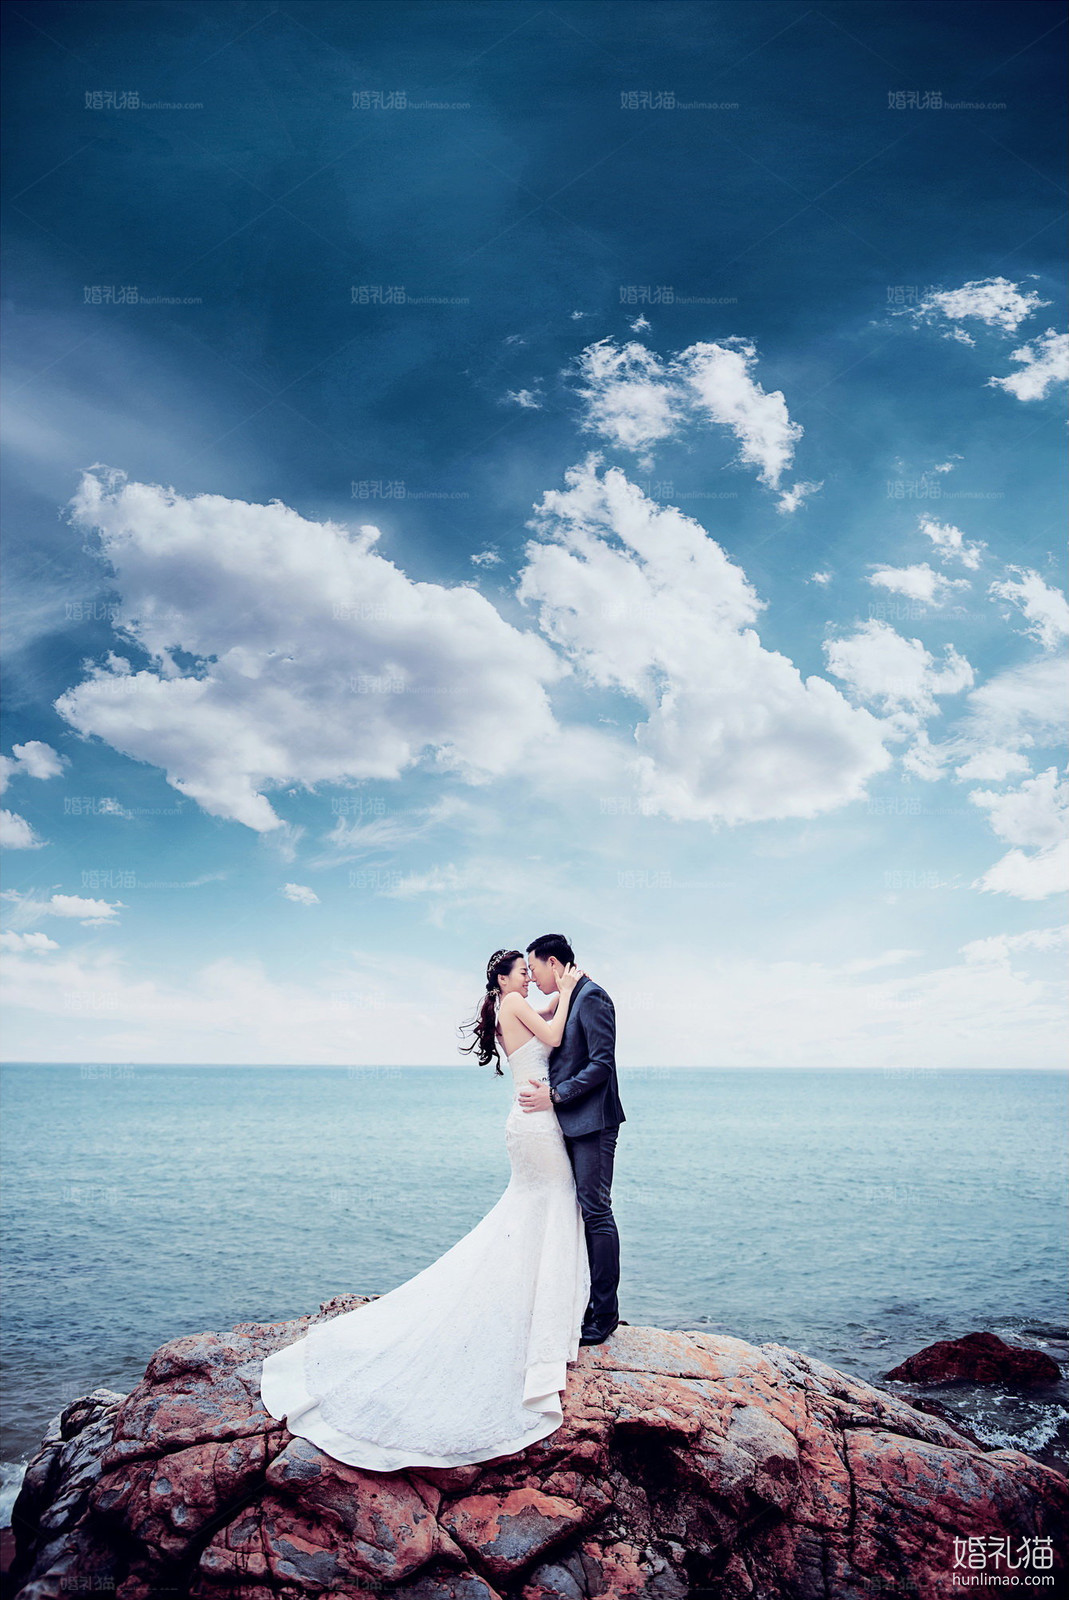 海景结婚照,[海景, 礁石],清远婚纱照,婚纱照图片